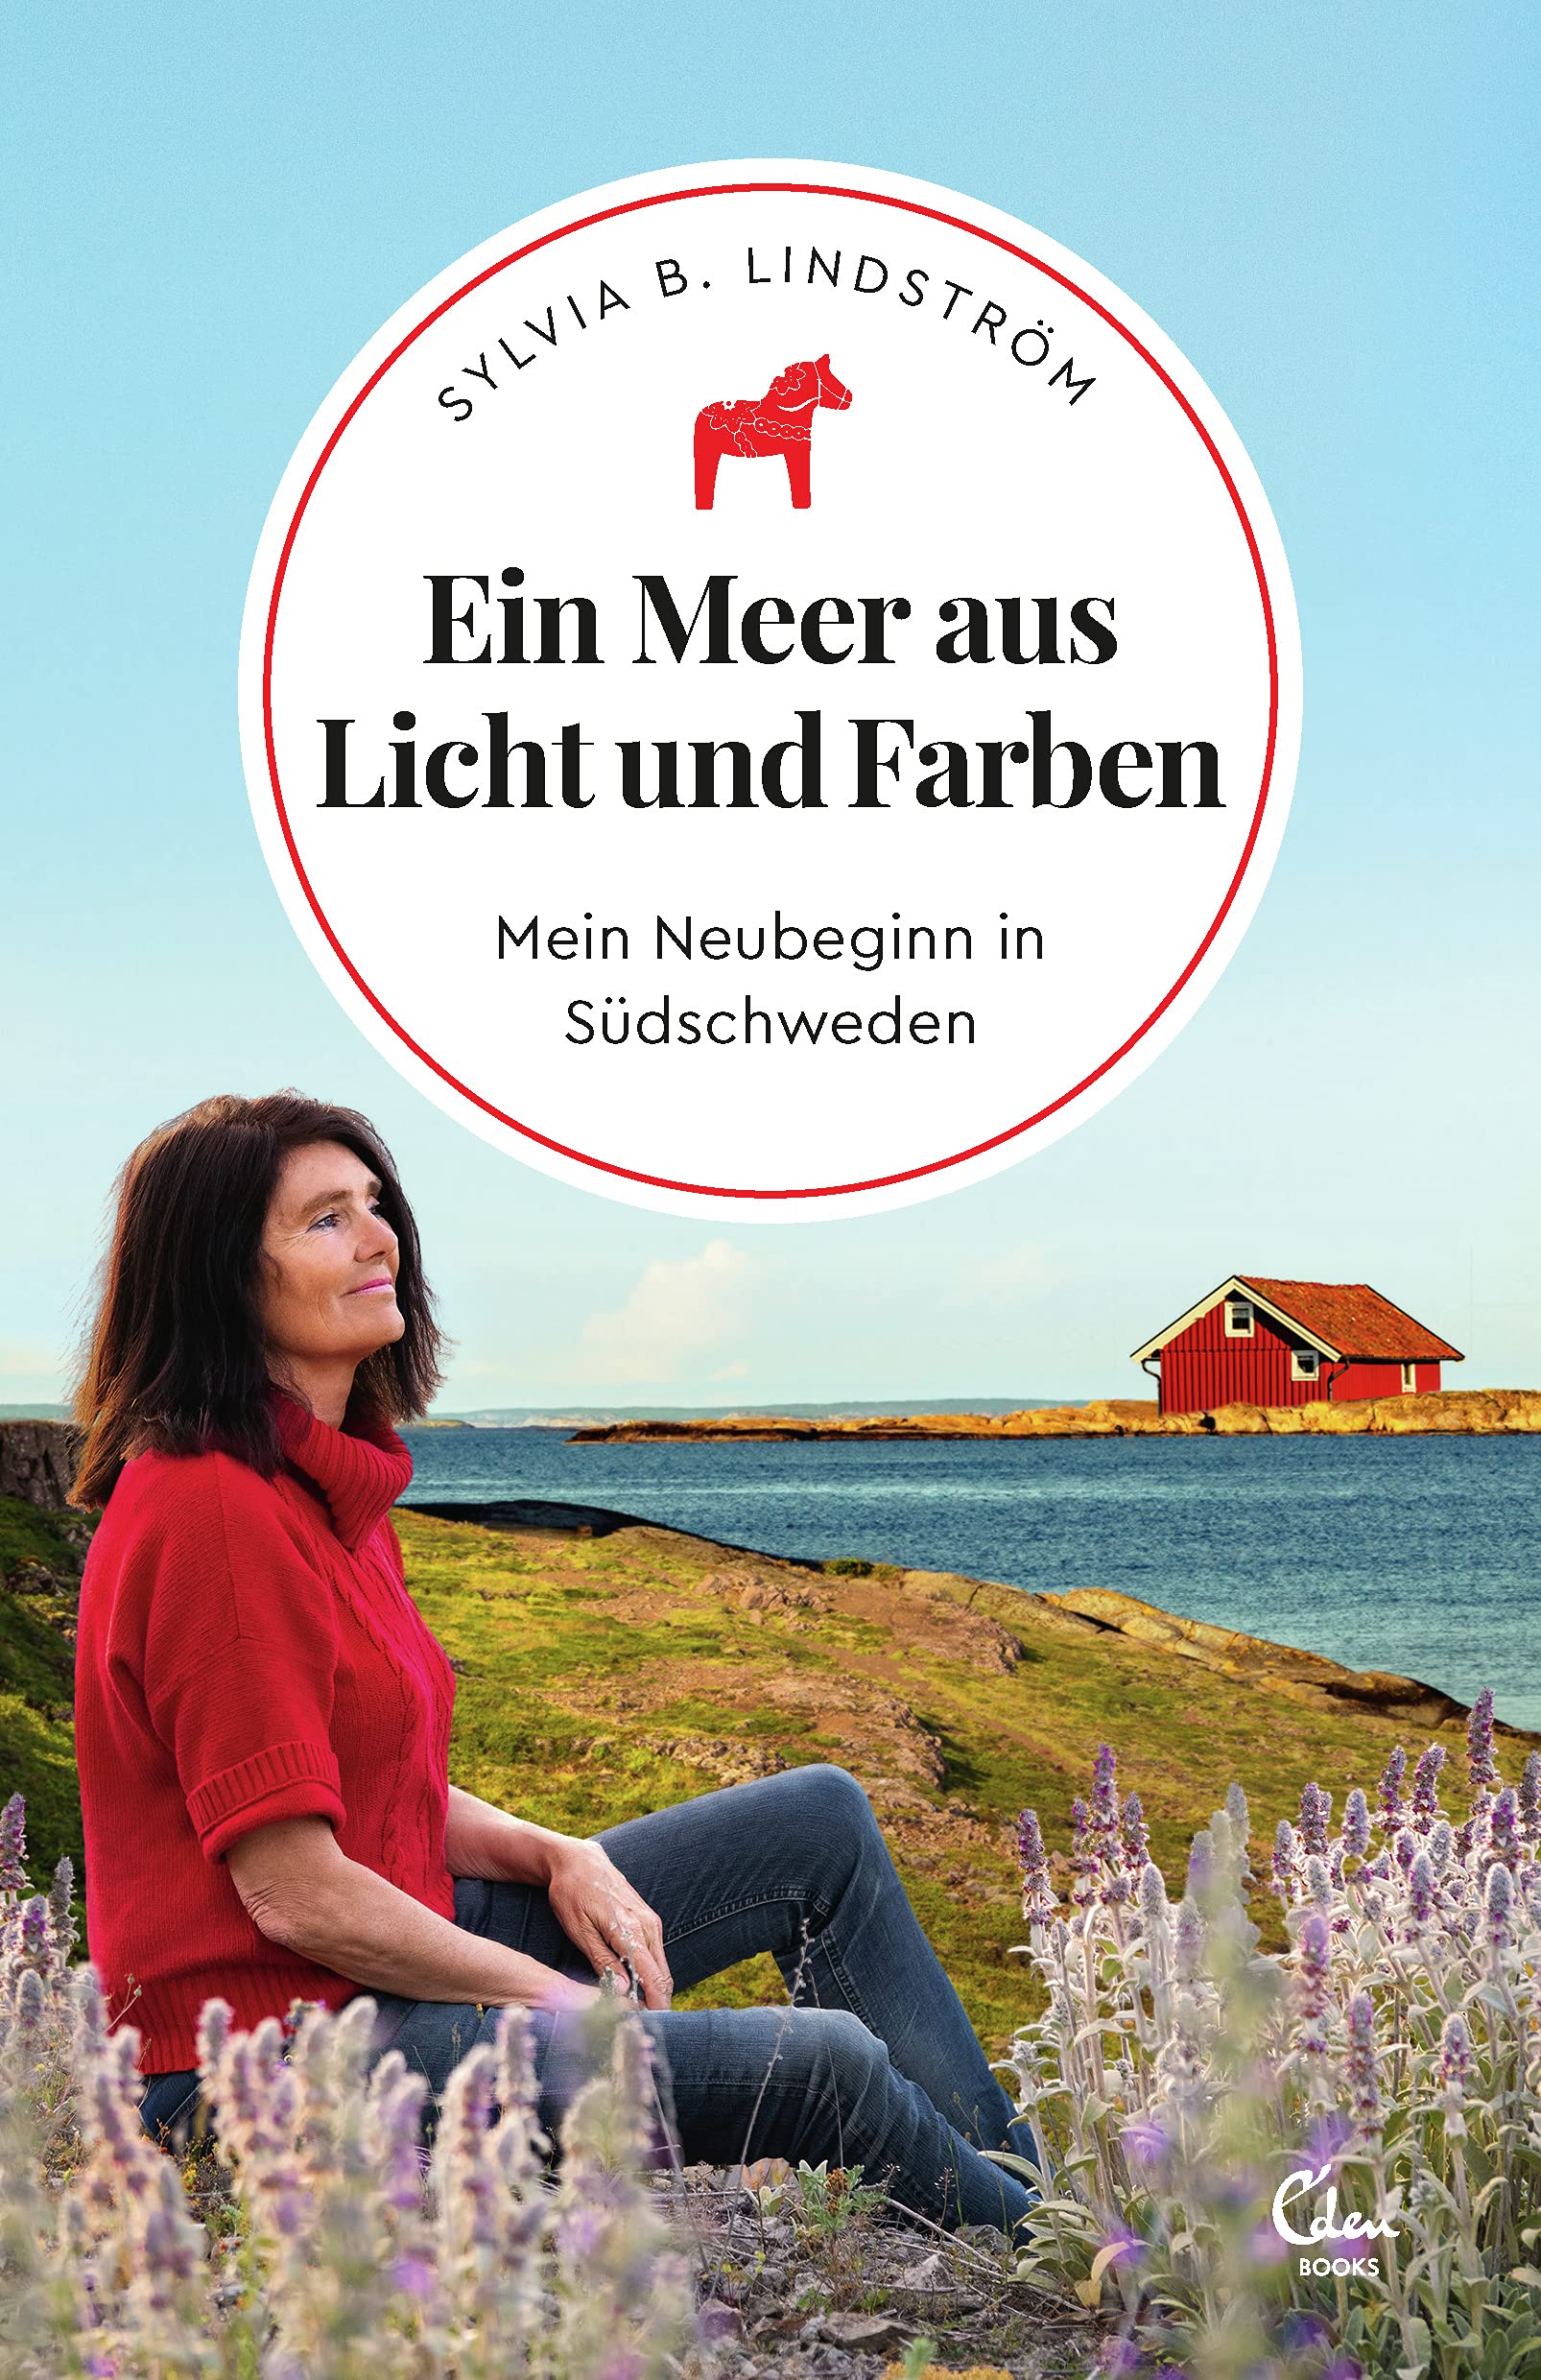 Buchcover: Sylvia B. Lindström: Ein Meer aus Licht und Farben